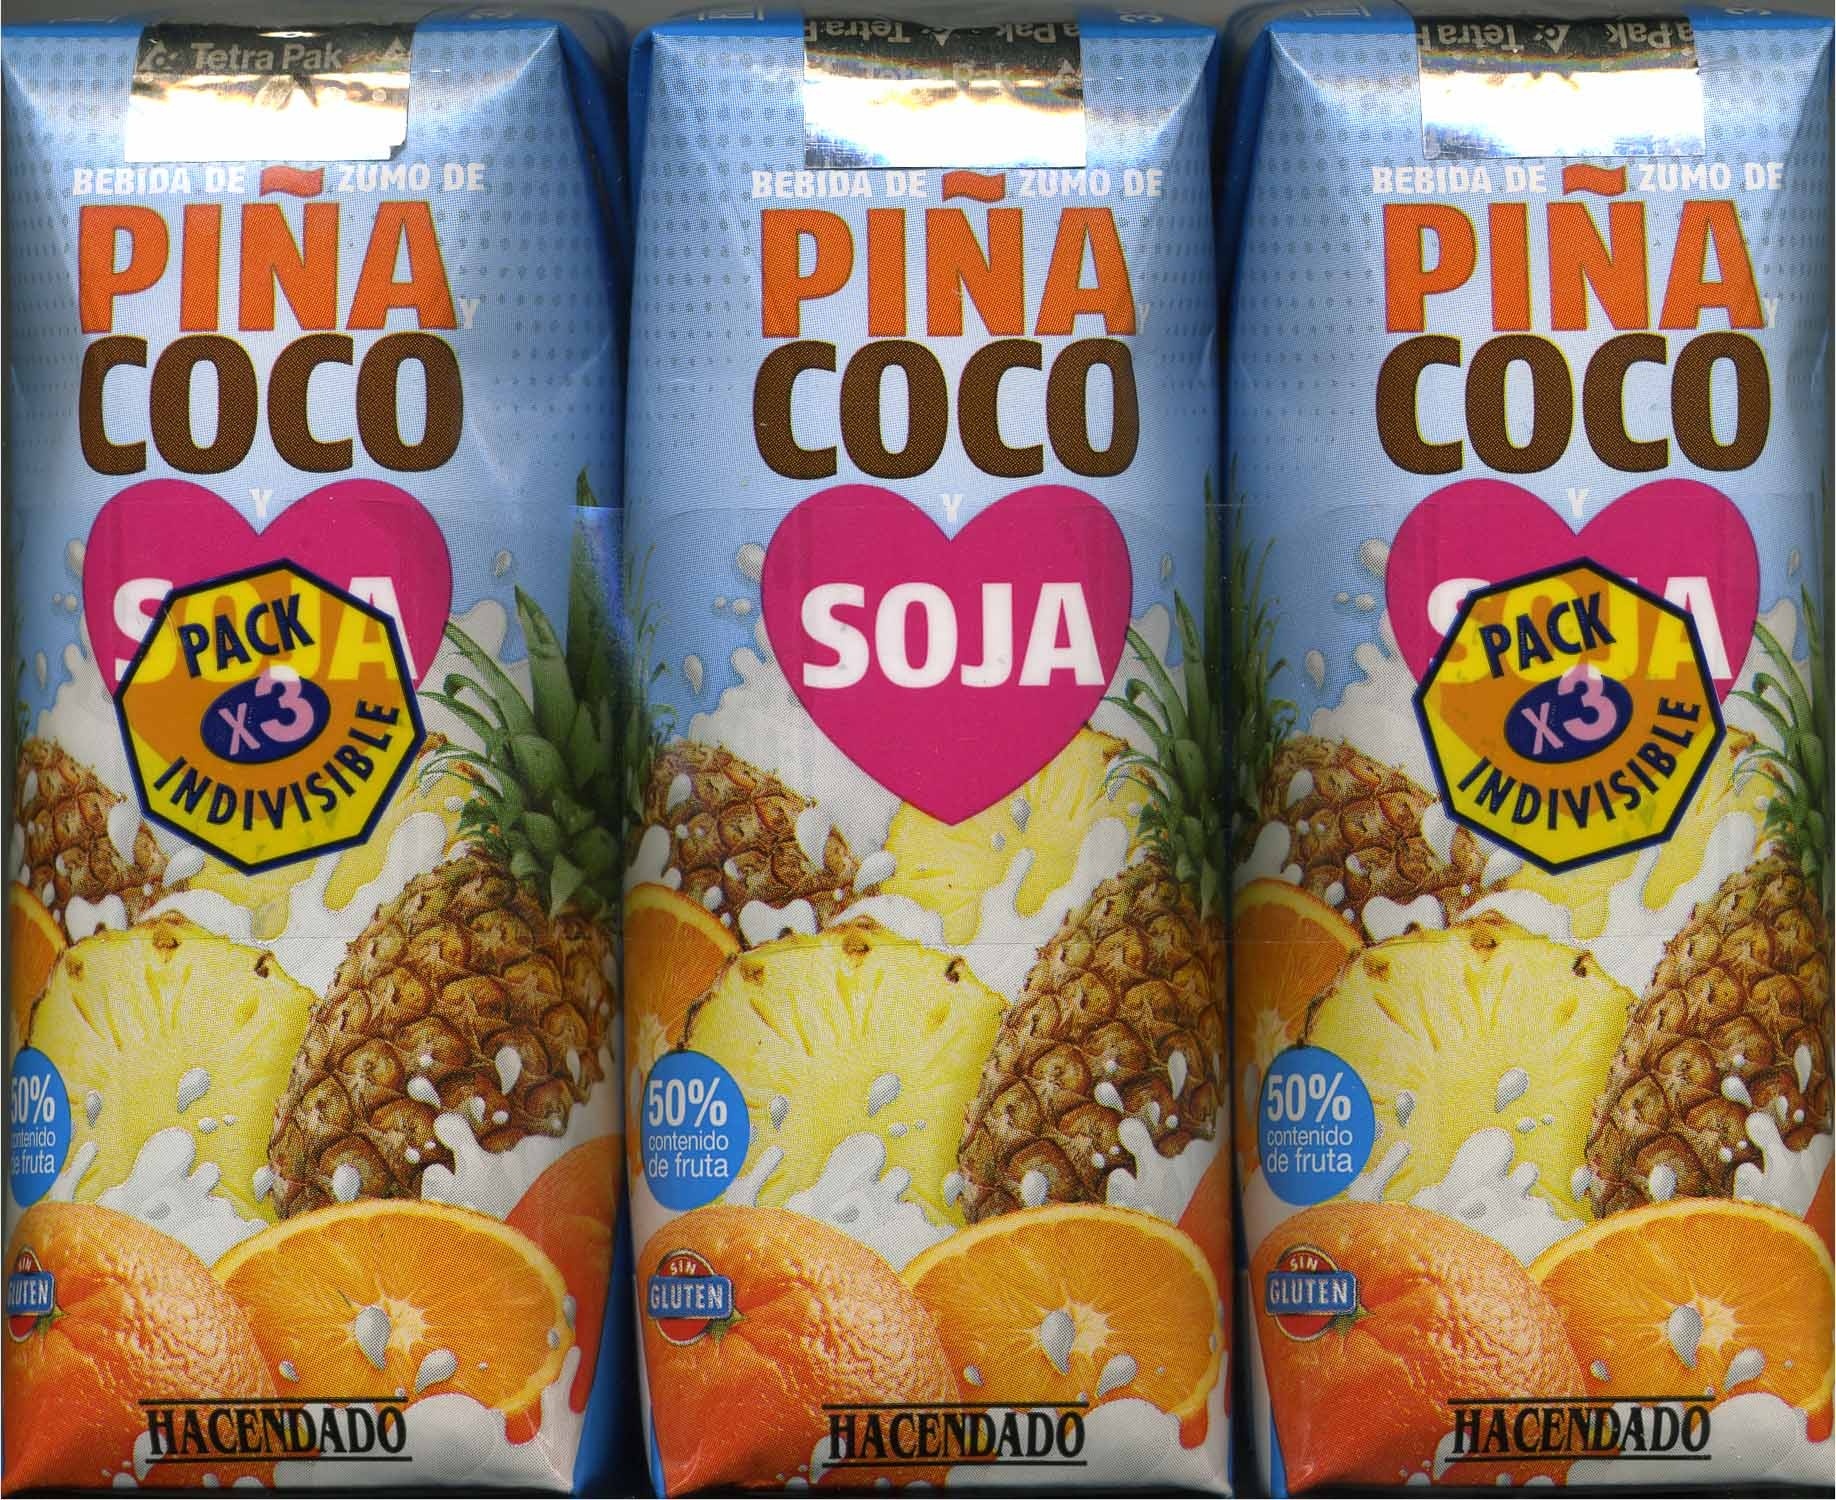 Piña coco soja - Product - es